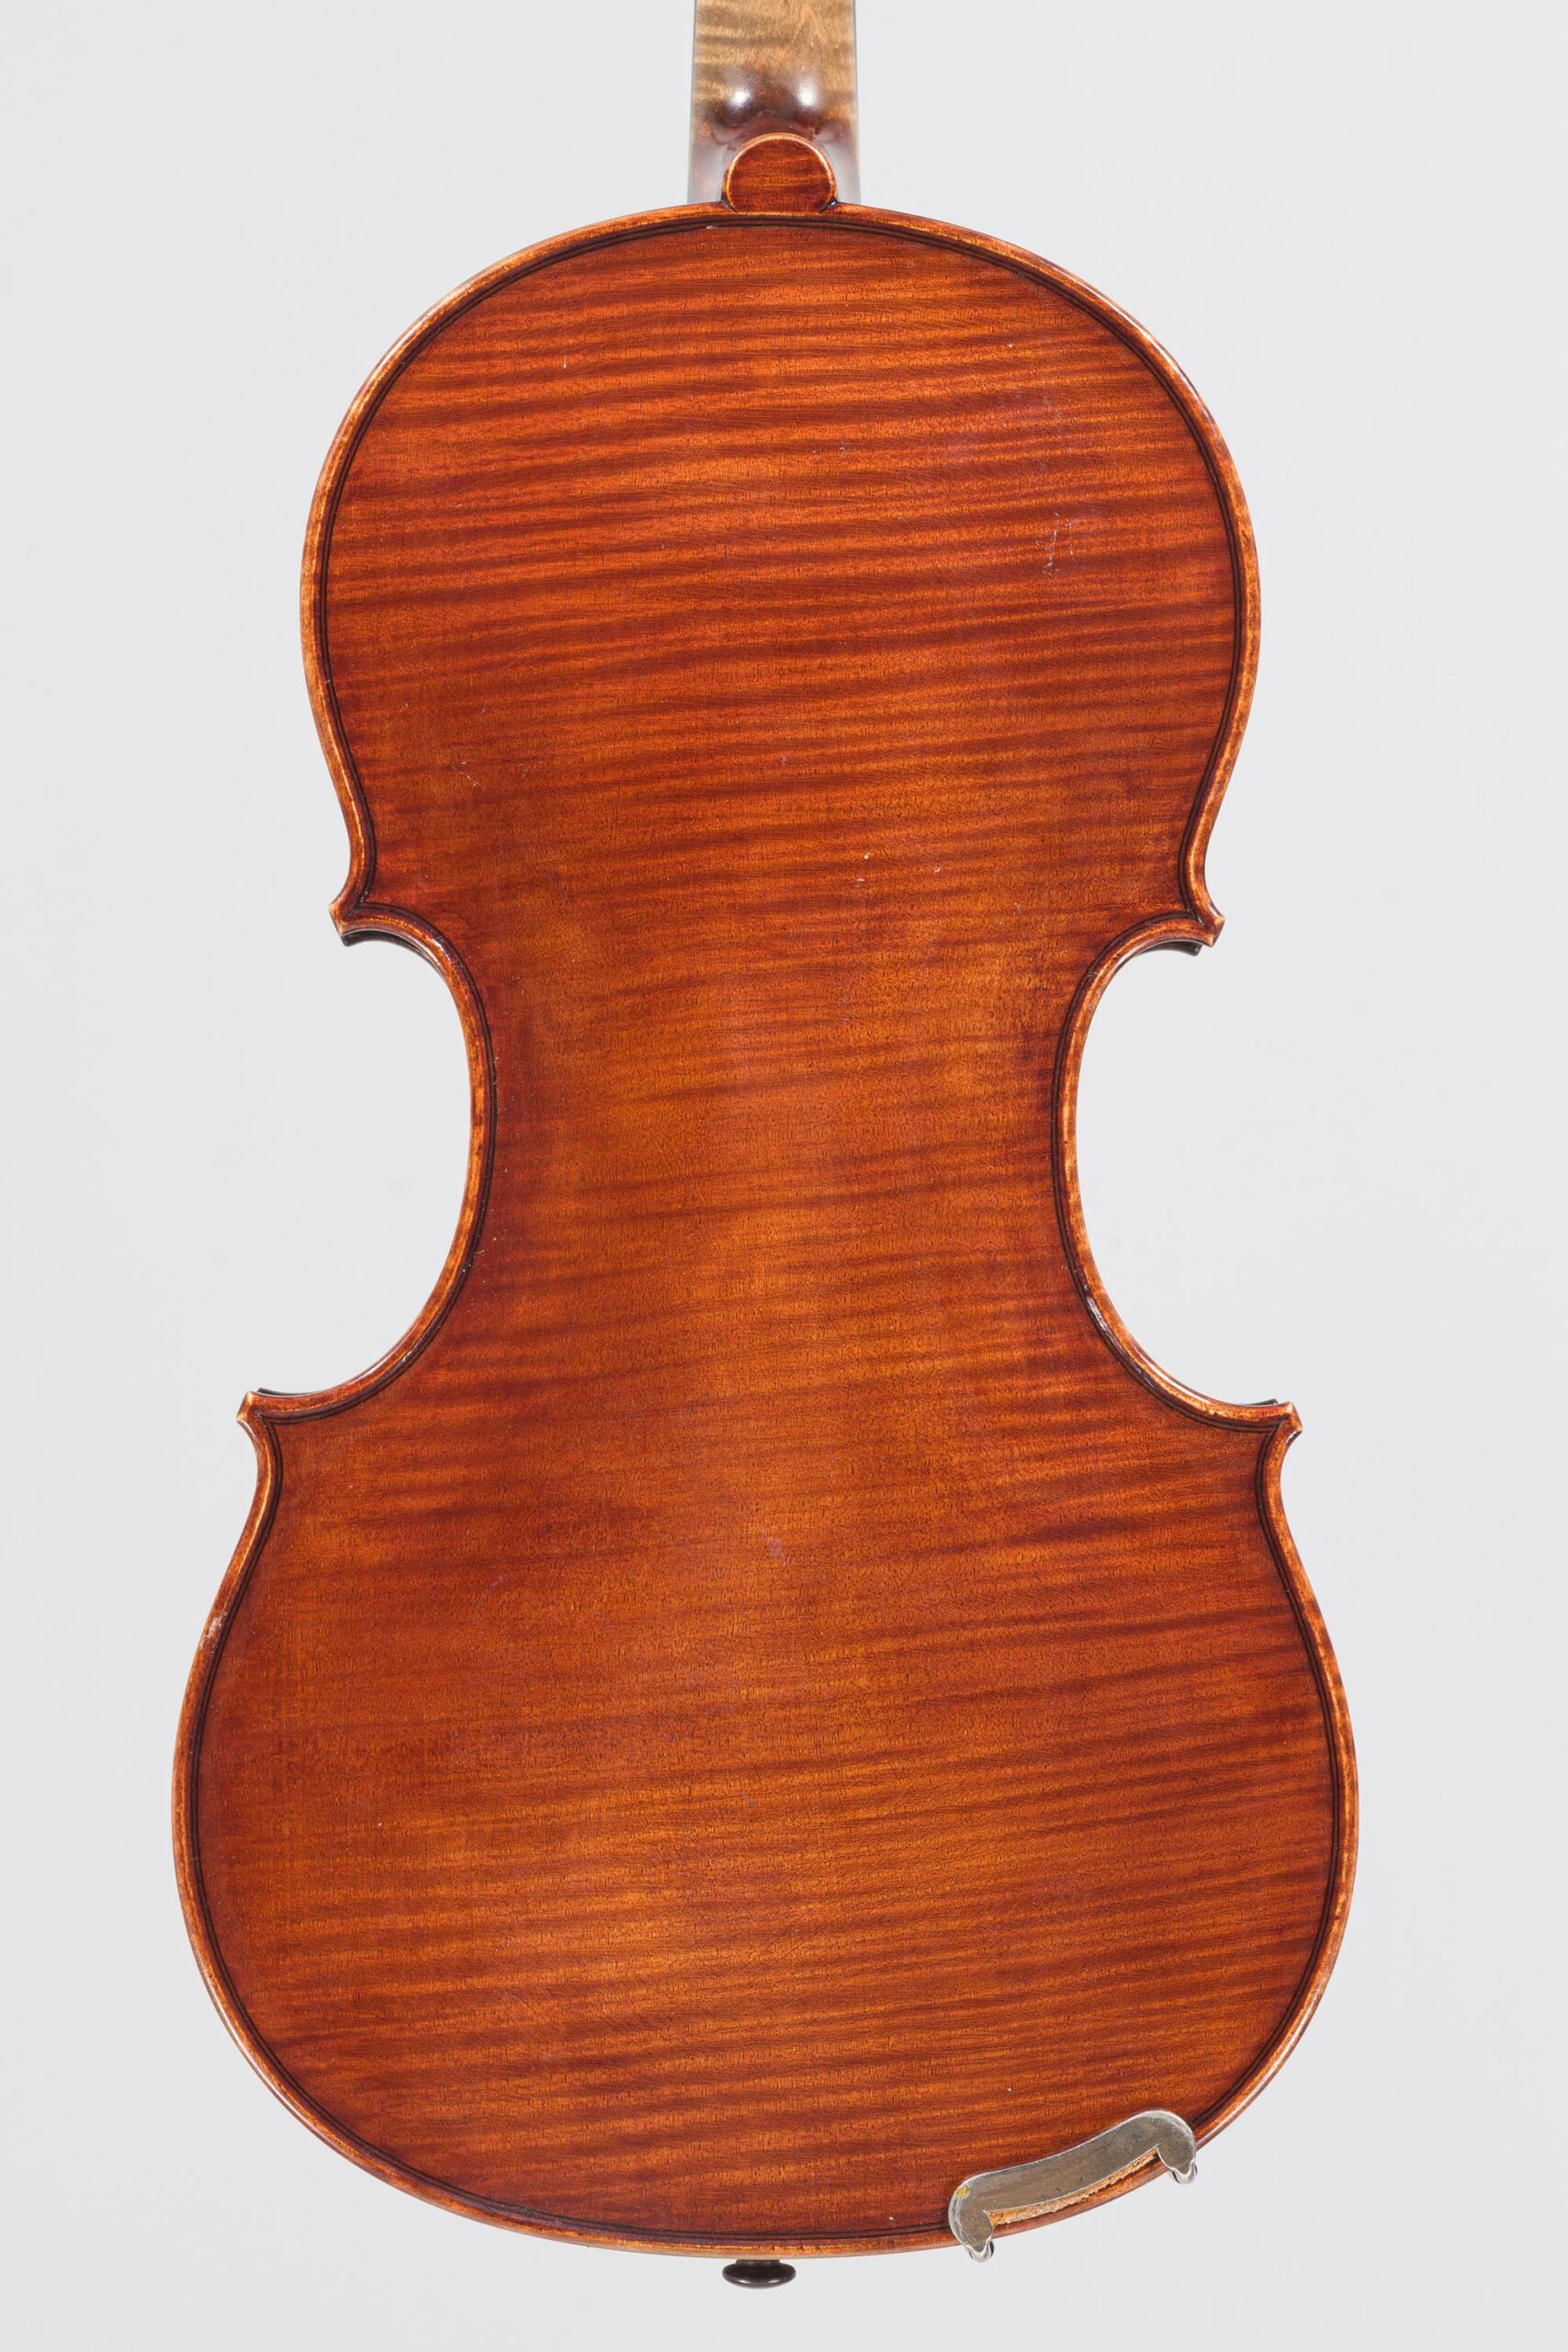 Lot 505 Violon de Lucien SCHMITT - Collection Calas Instrument mis en vente par Vichy Enchères le 30 novembre 2022 © C. Darbelet